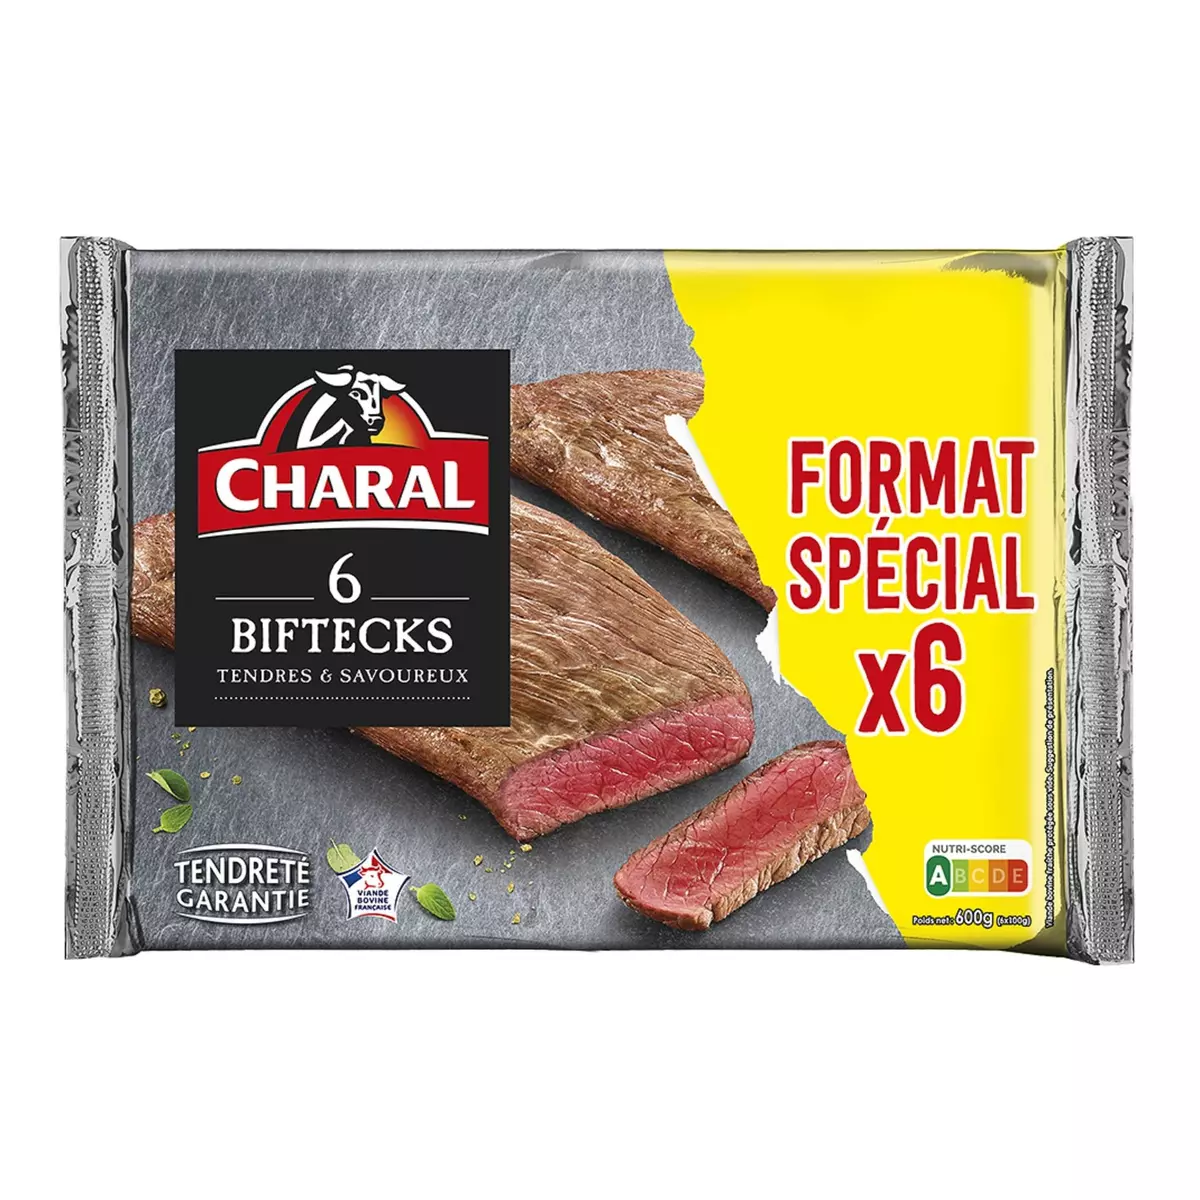 CHARAL Biftecks tendres et savoureux 6 pièces 600g